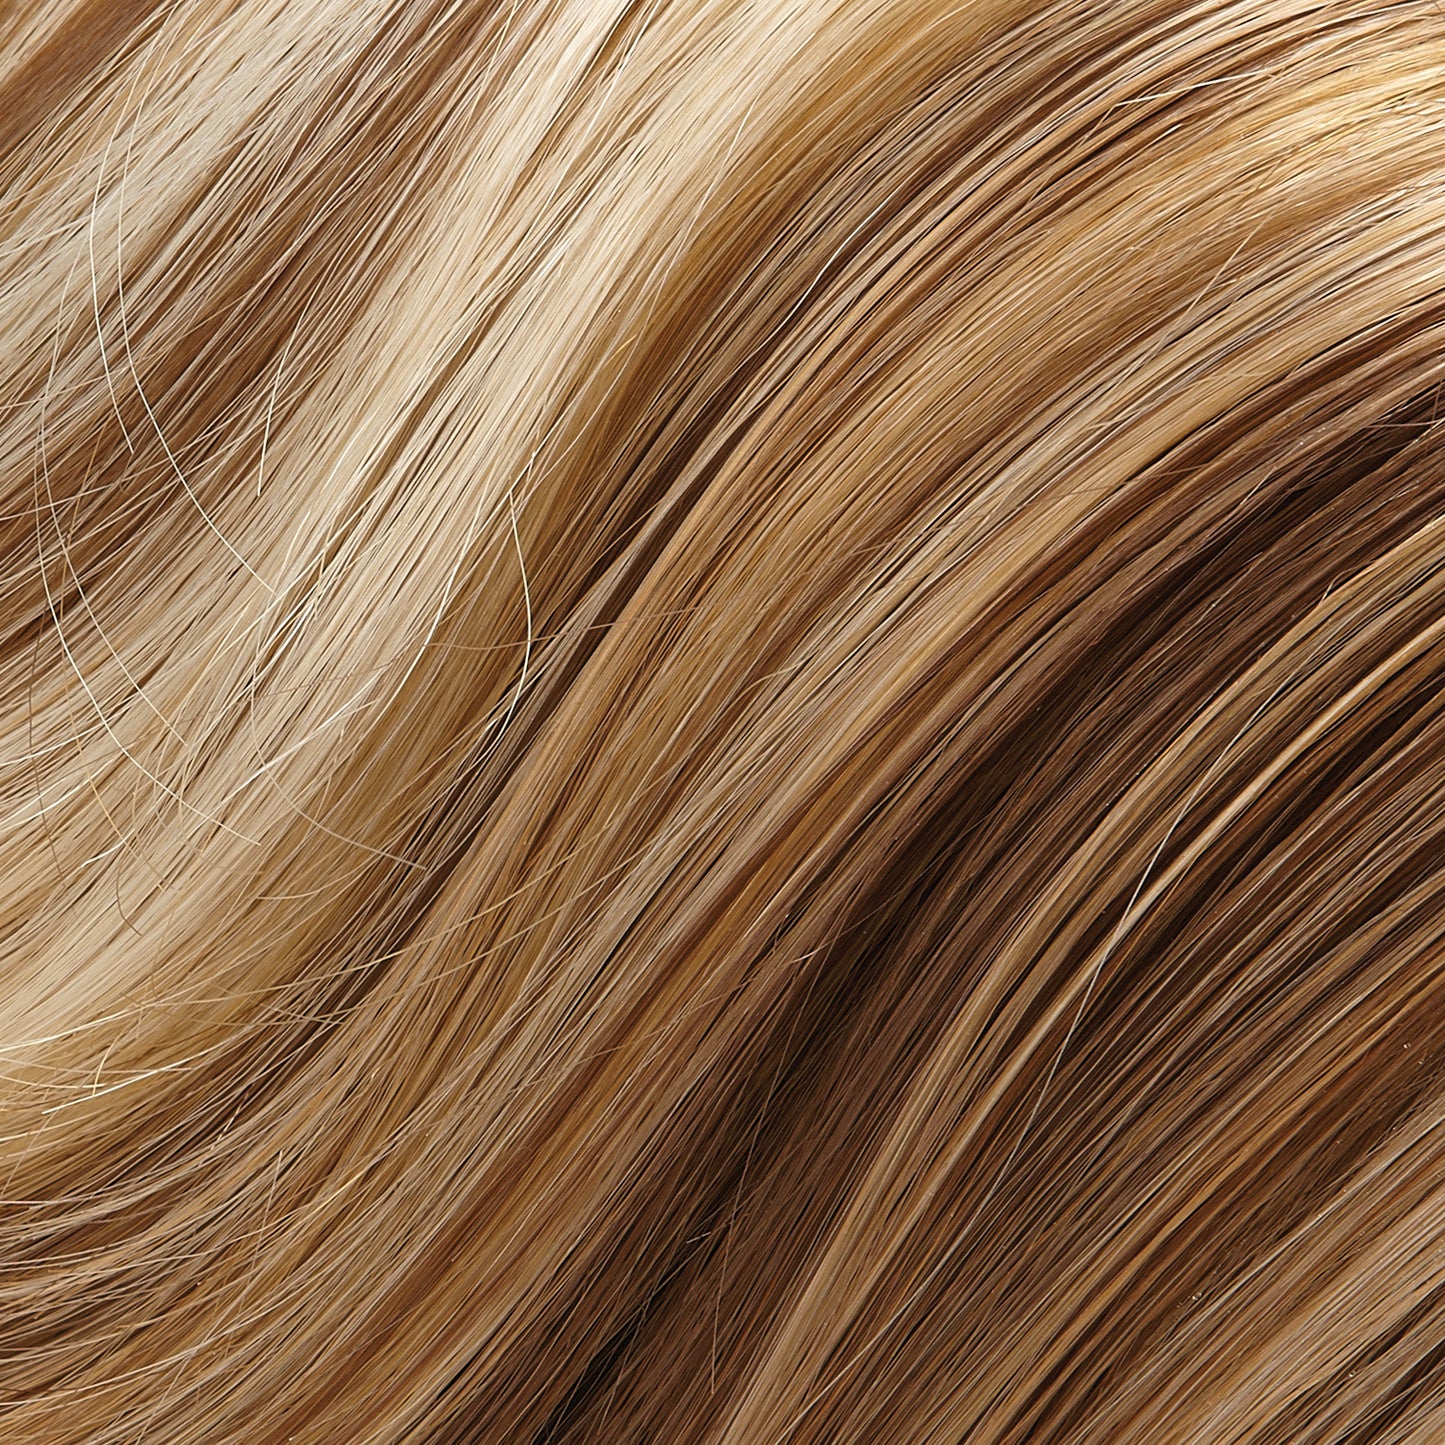 Mimic Synthetic Hair Wrap - Jon Renau